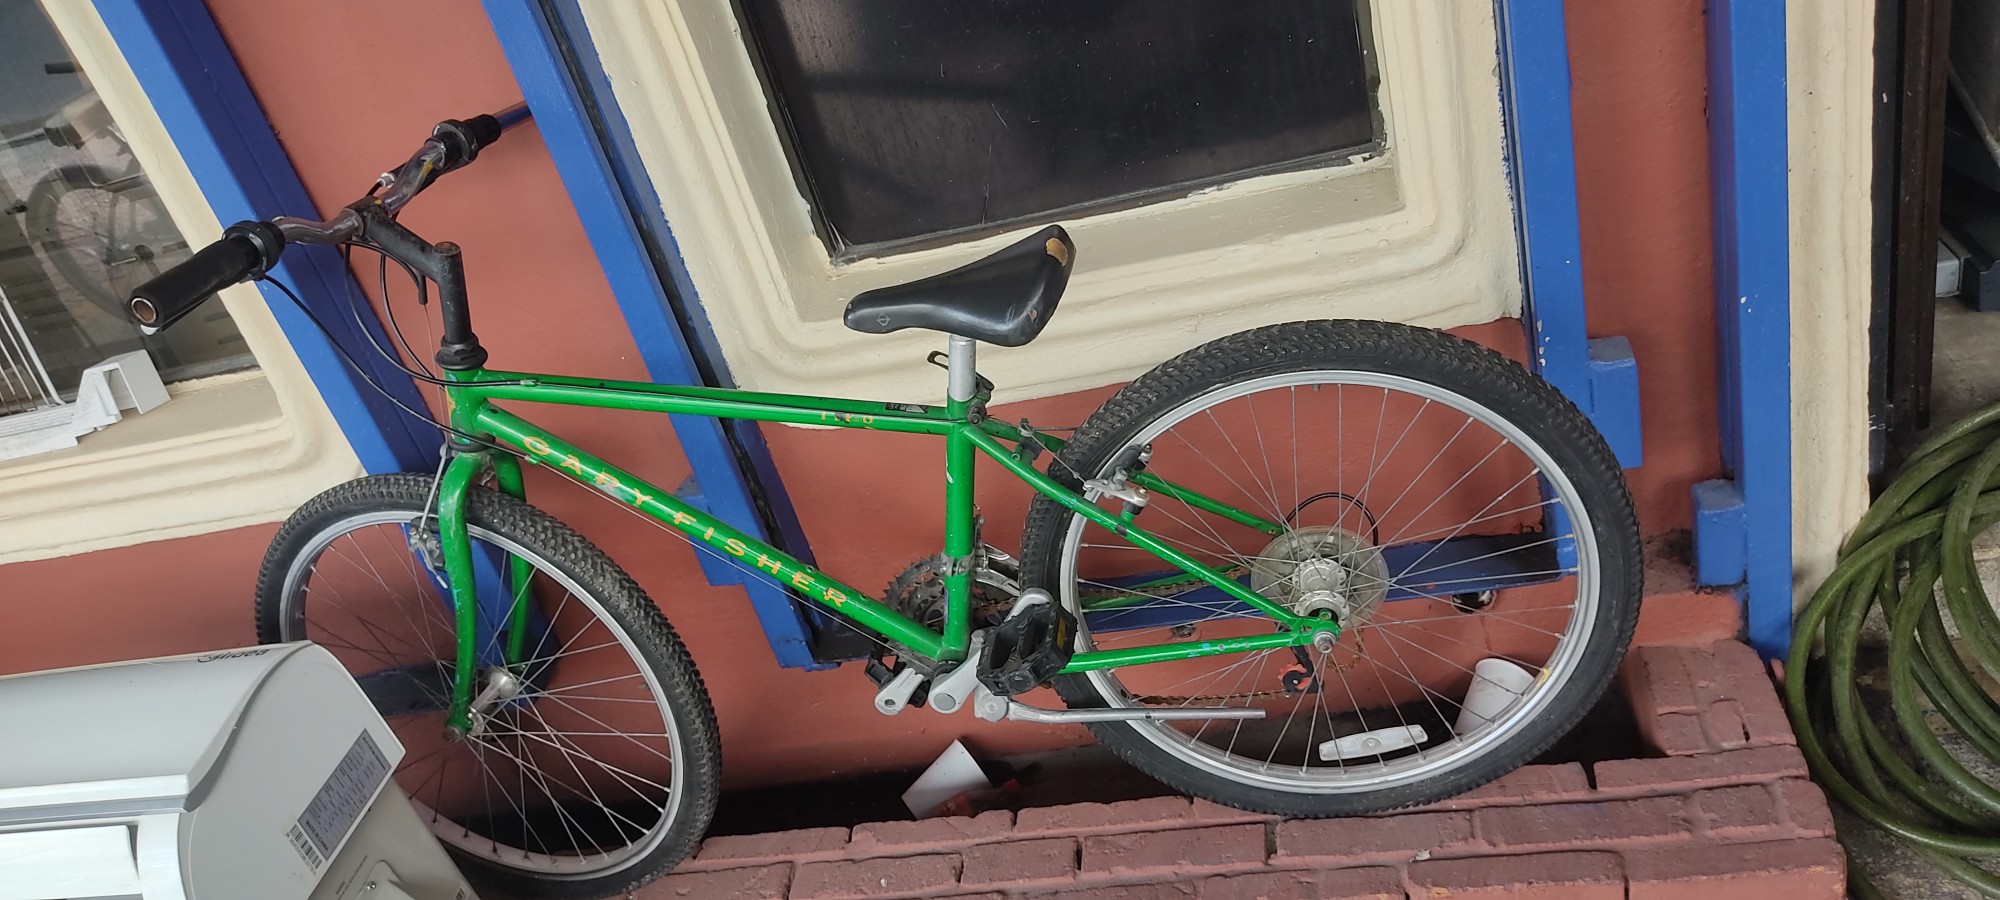 bicicletas y accesorios - Bicicleta verde aro 24